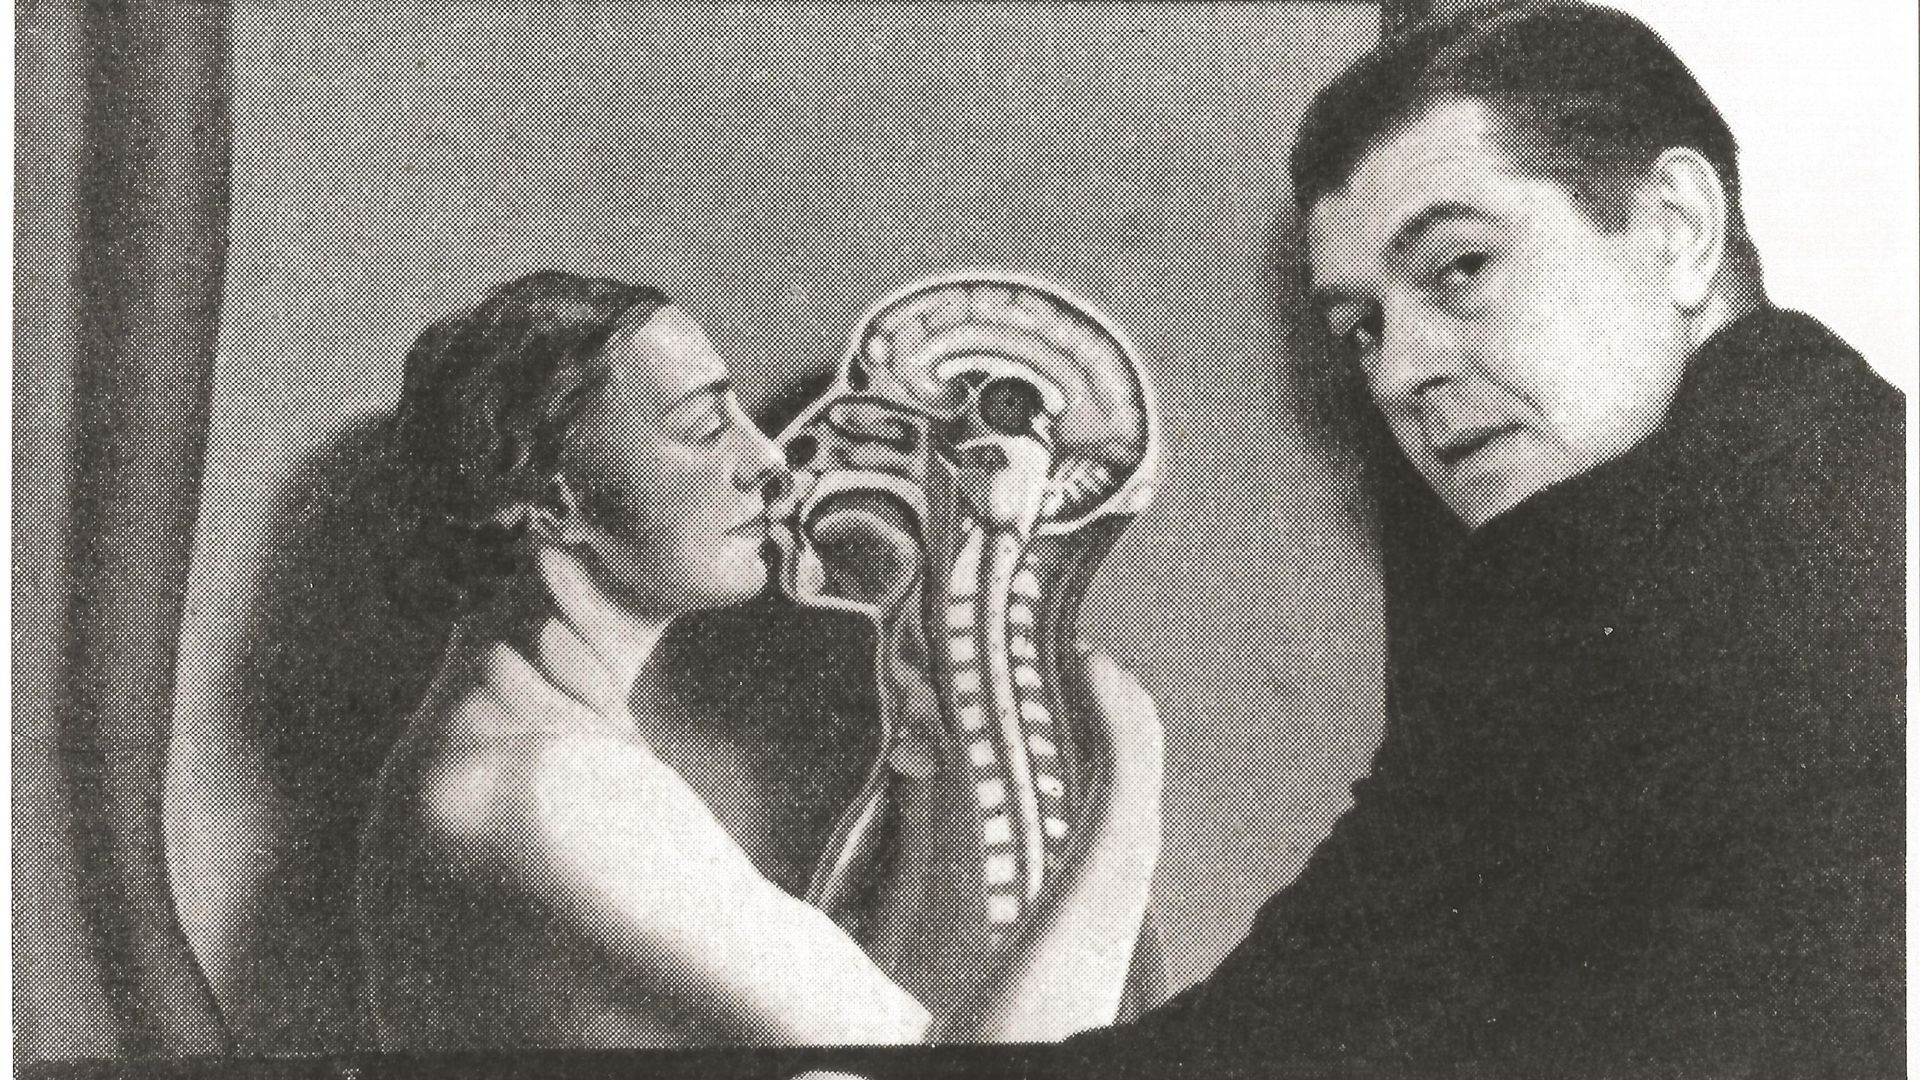 Des oeuvres inédites de René Magritte exposées à Jette